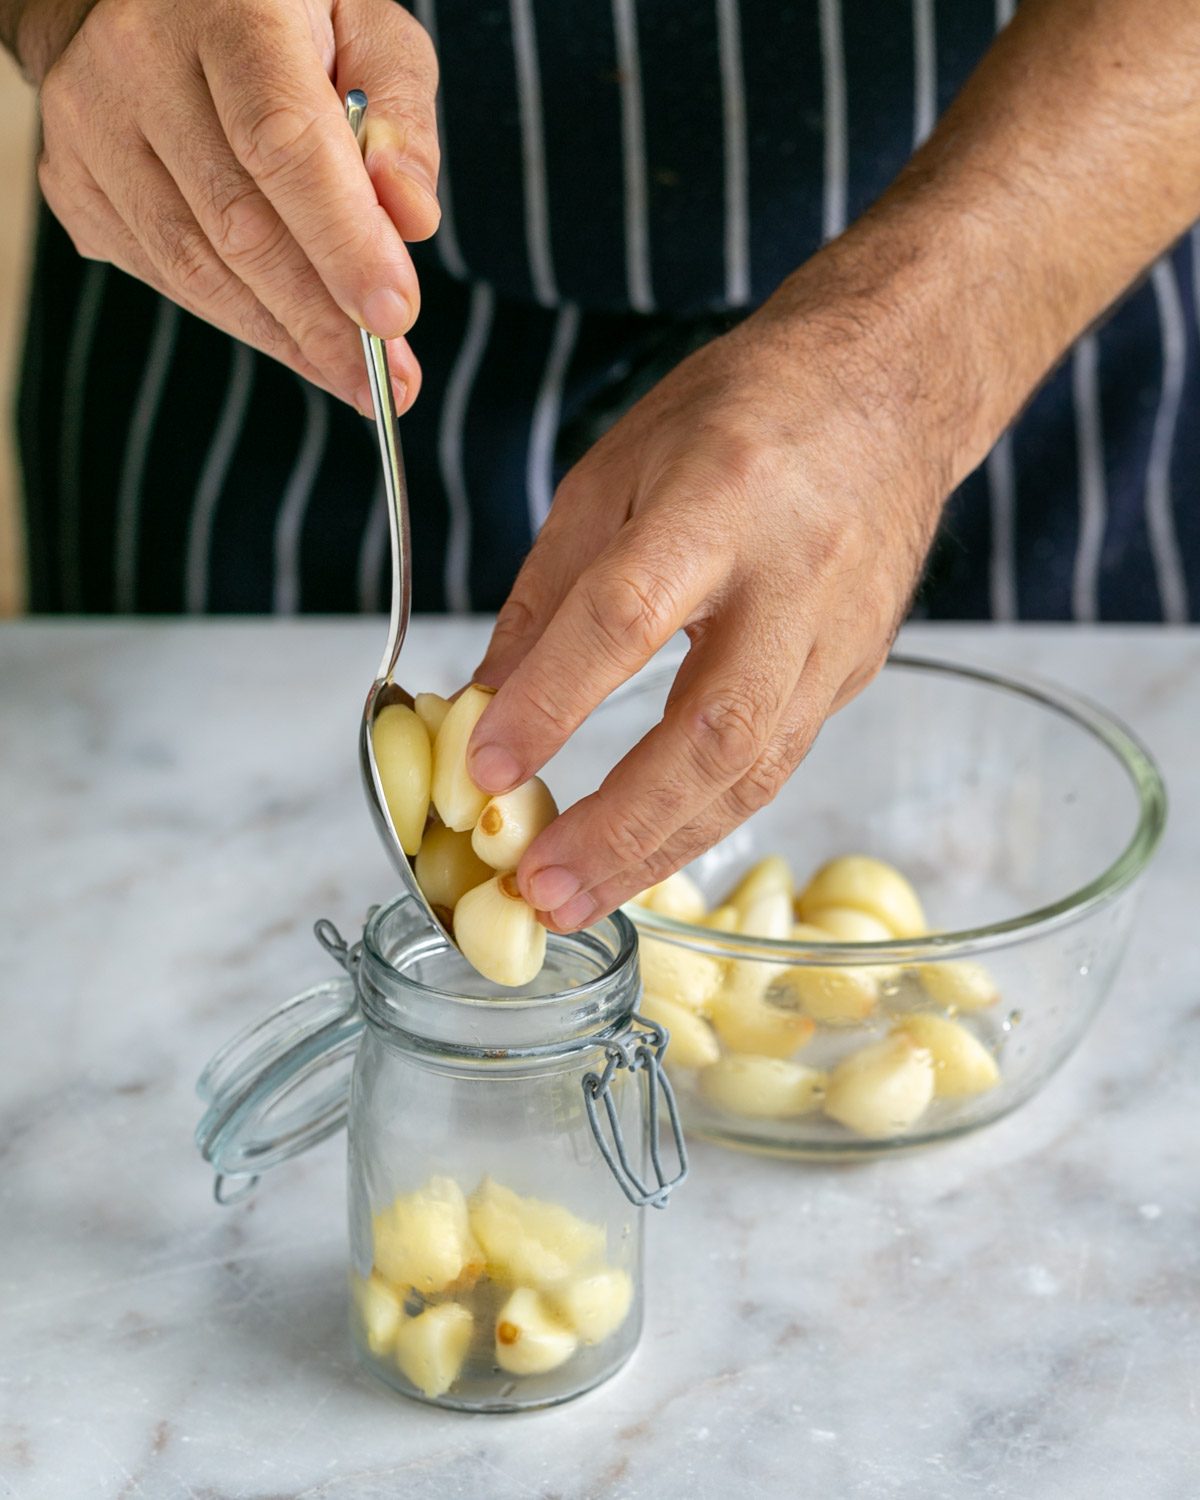 Adding blanched garlic to a jar